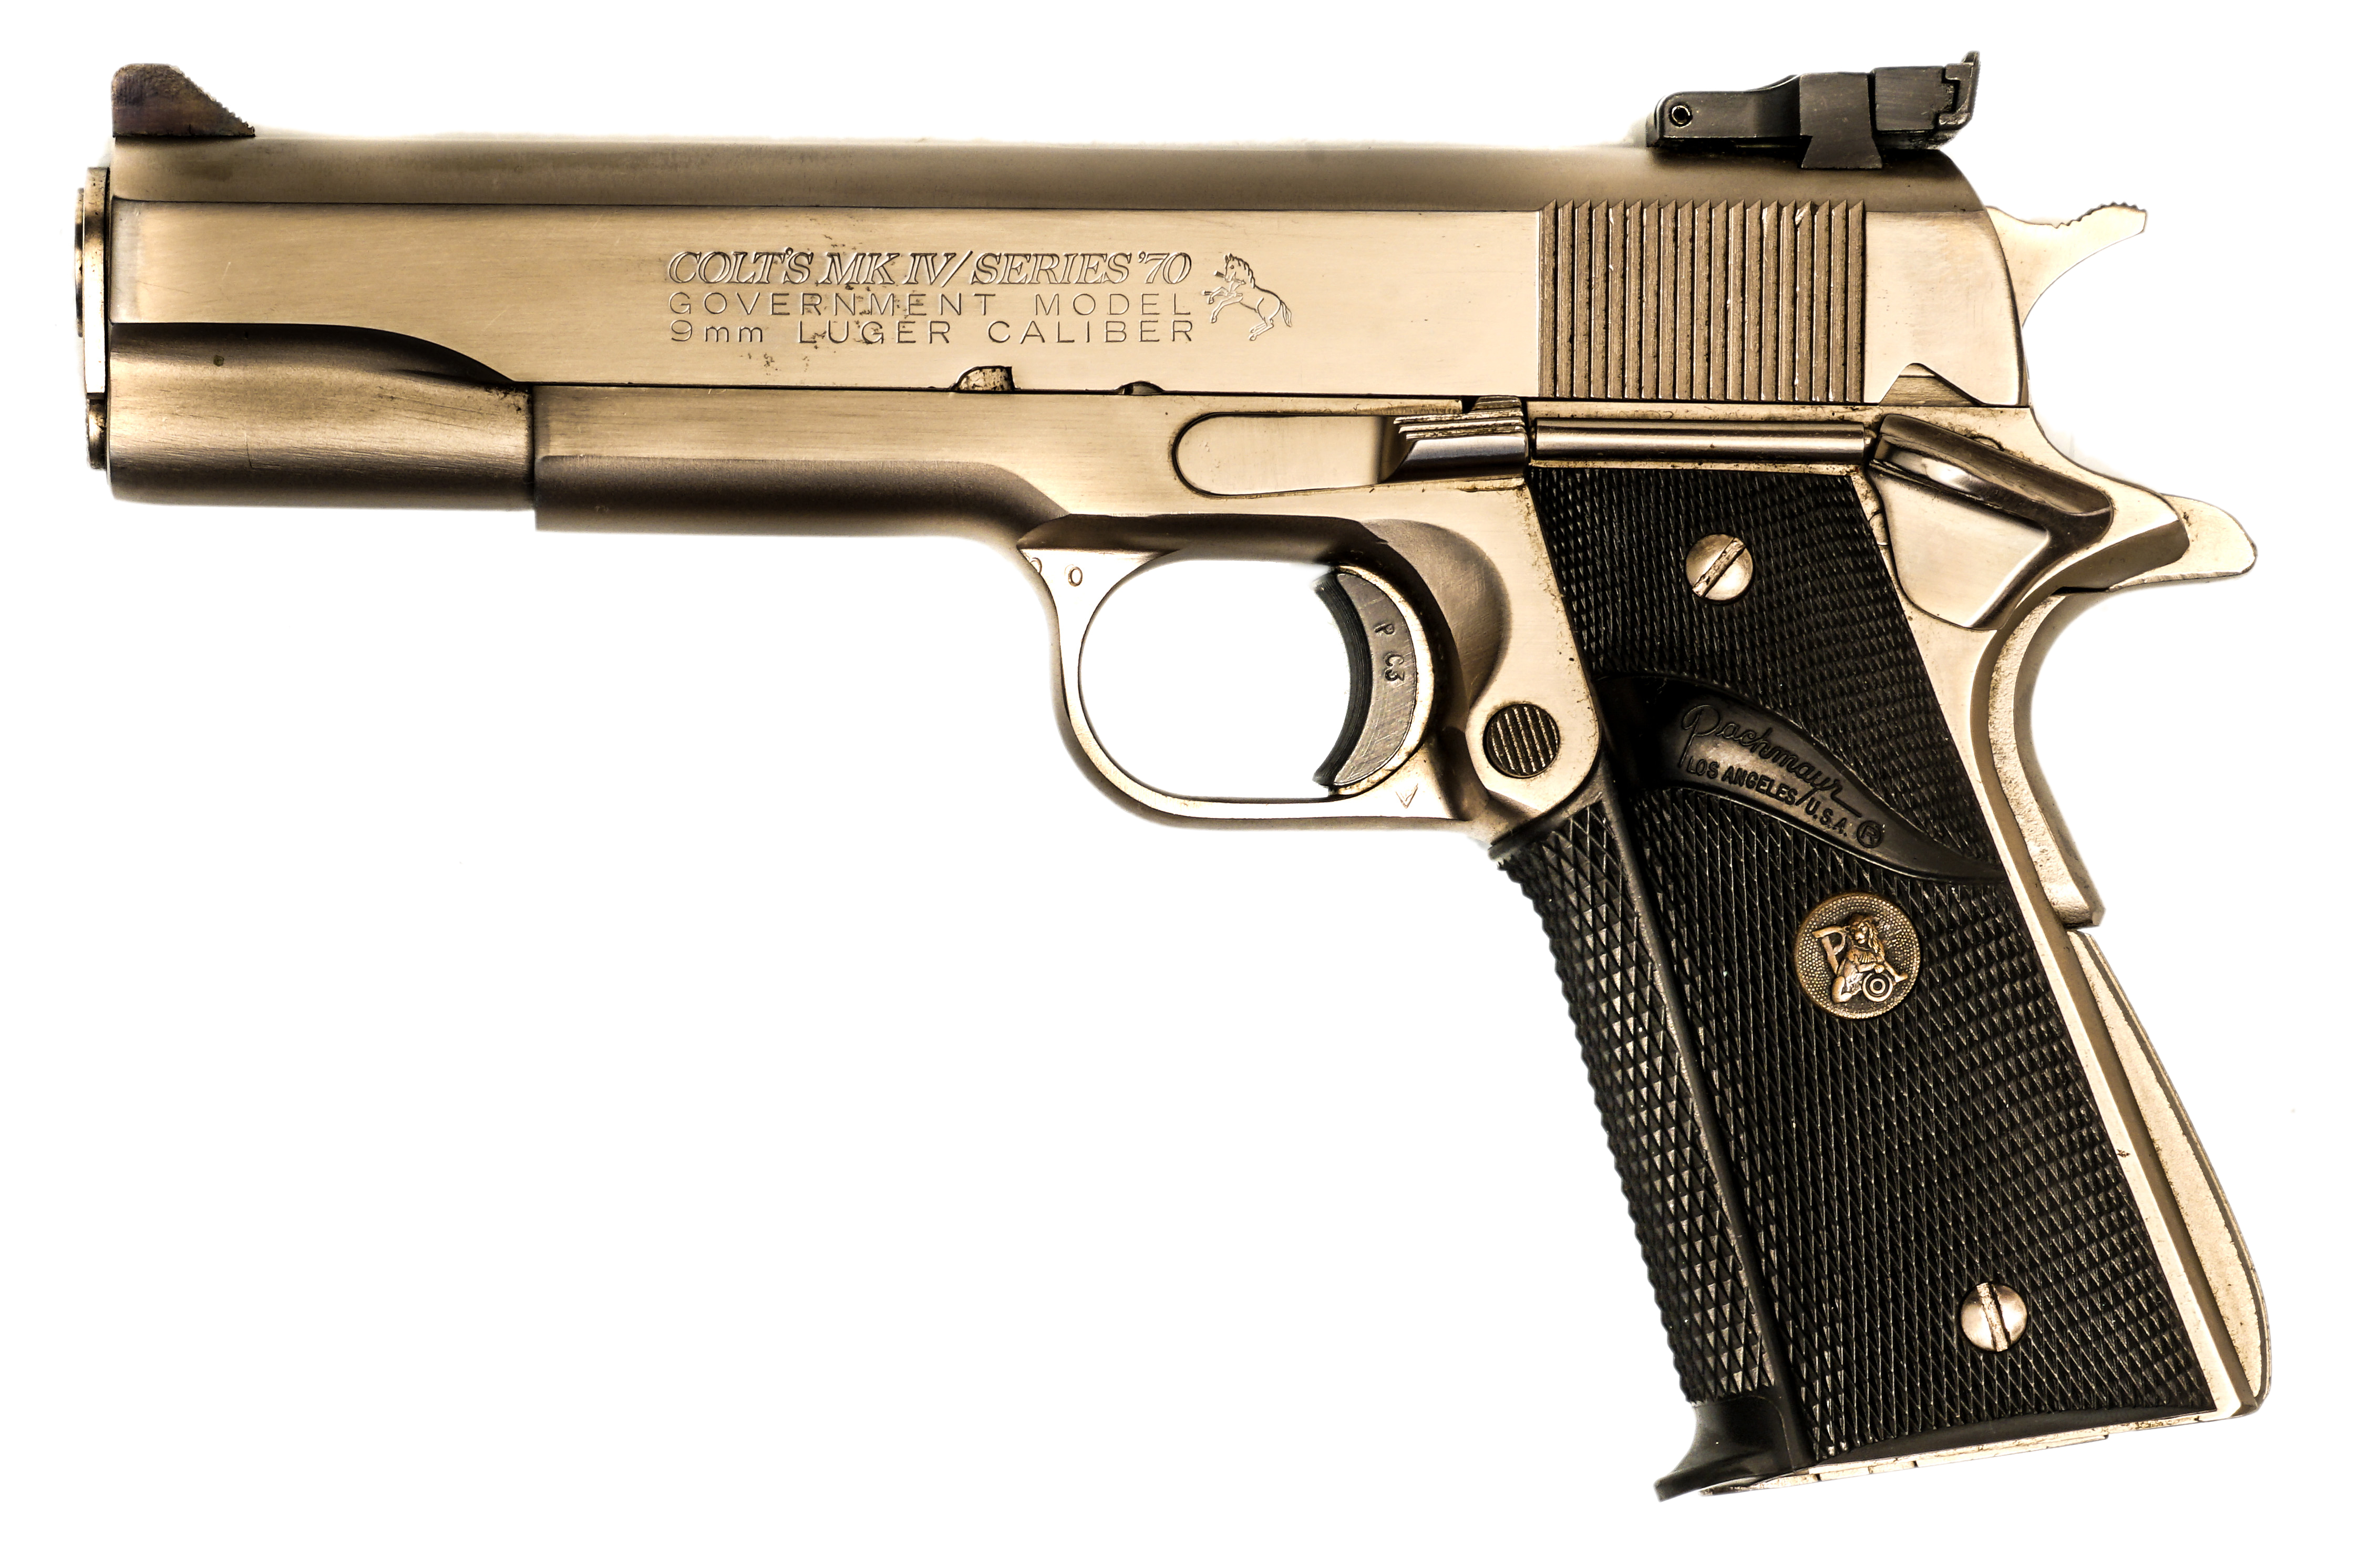 Описание объекта - Colt Government MK IV Series 70, 9 mm Luger, #70L22013, ...